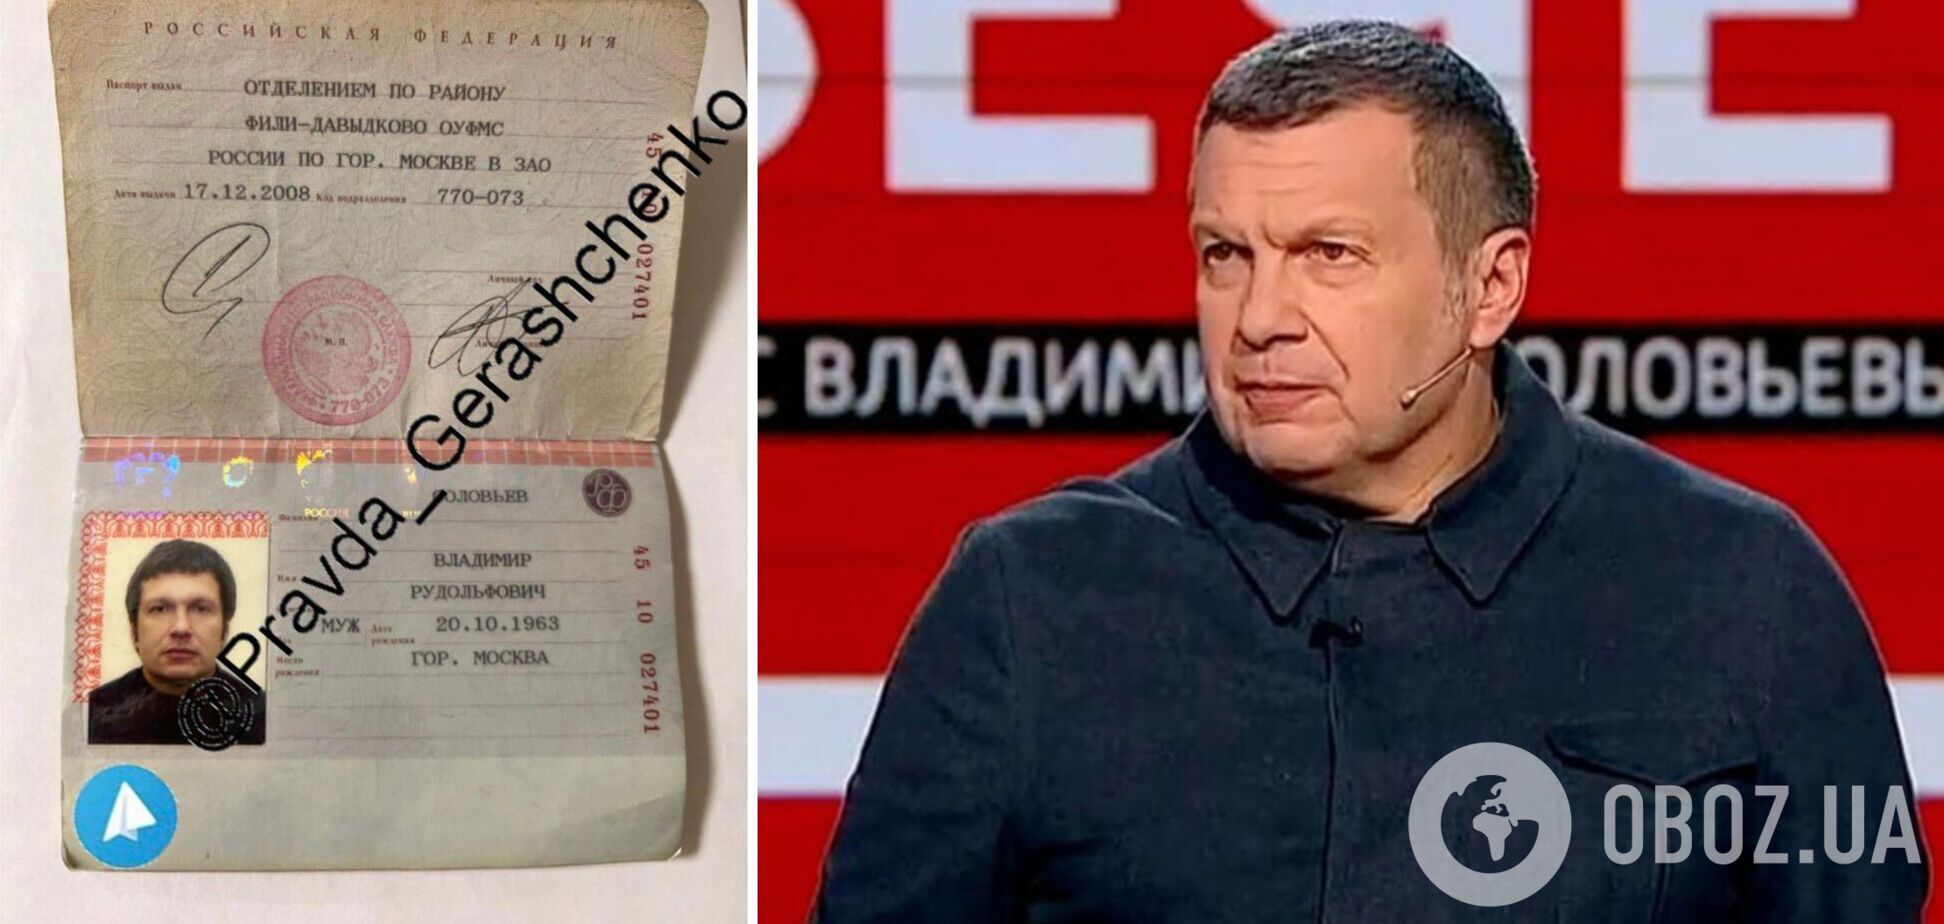 Геращенко объявил награду за взлом аккаунта пропагандиста Соловьева: уже удалось достать фото его паспорта